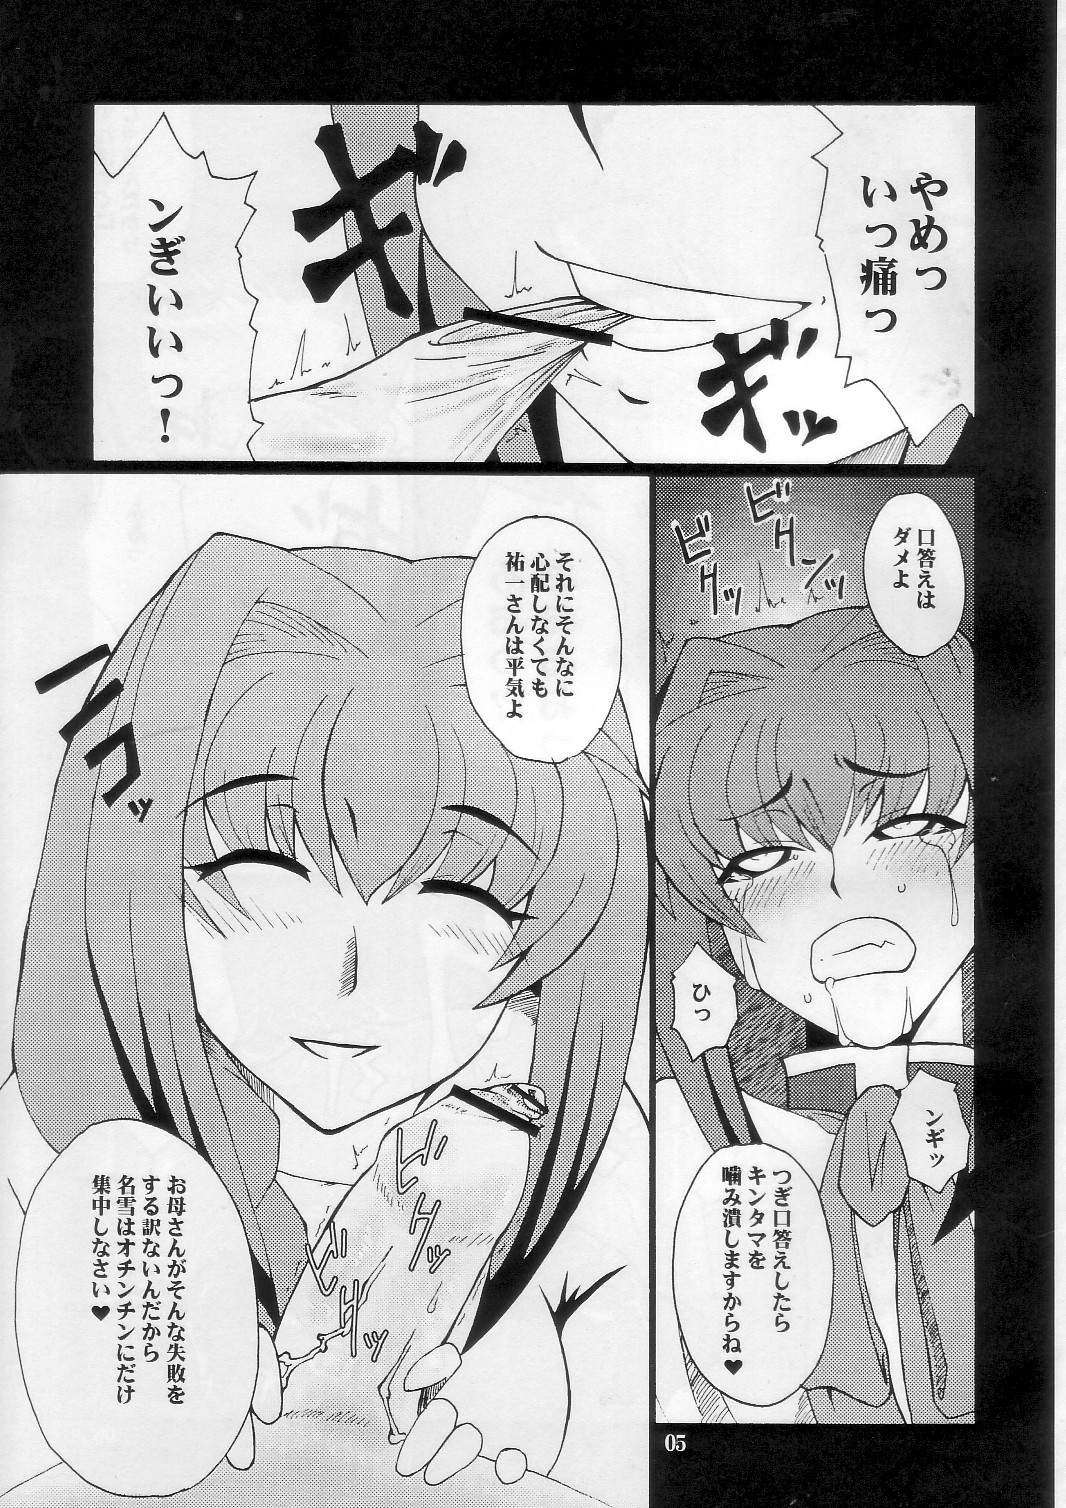 [Hanjuku Yude Tamago] Kyouki vol.5 (Kanon) page 5 full